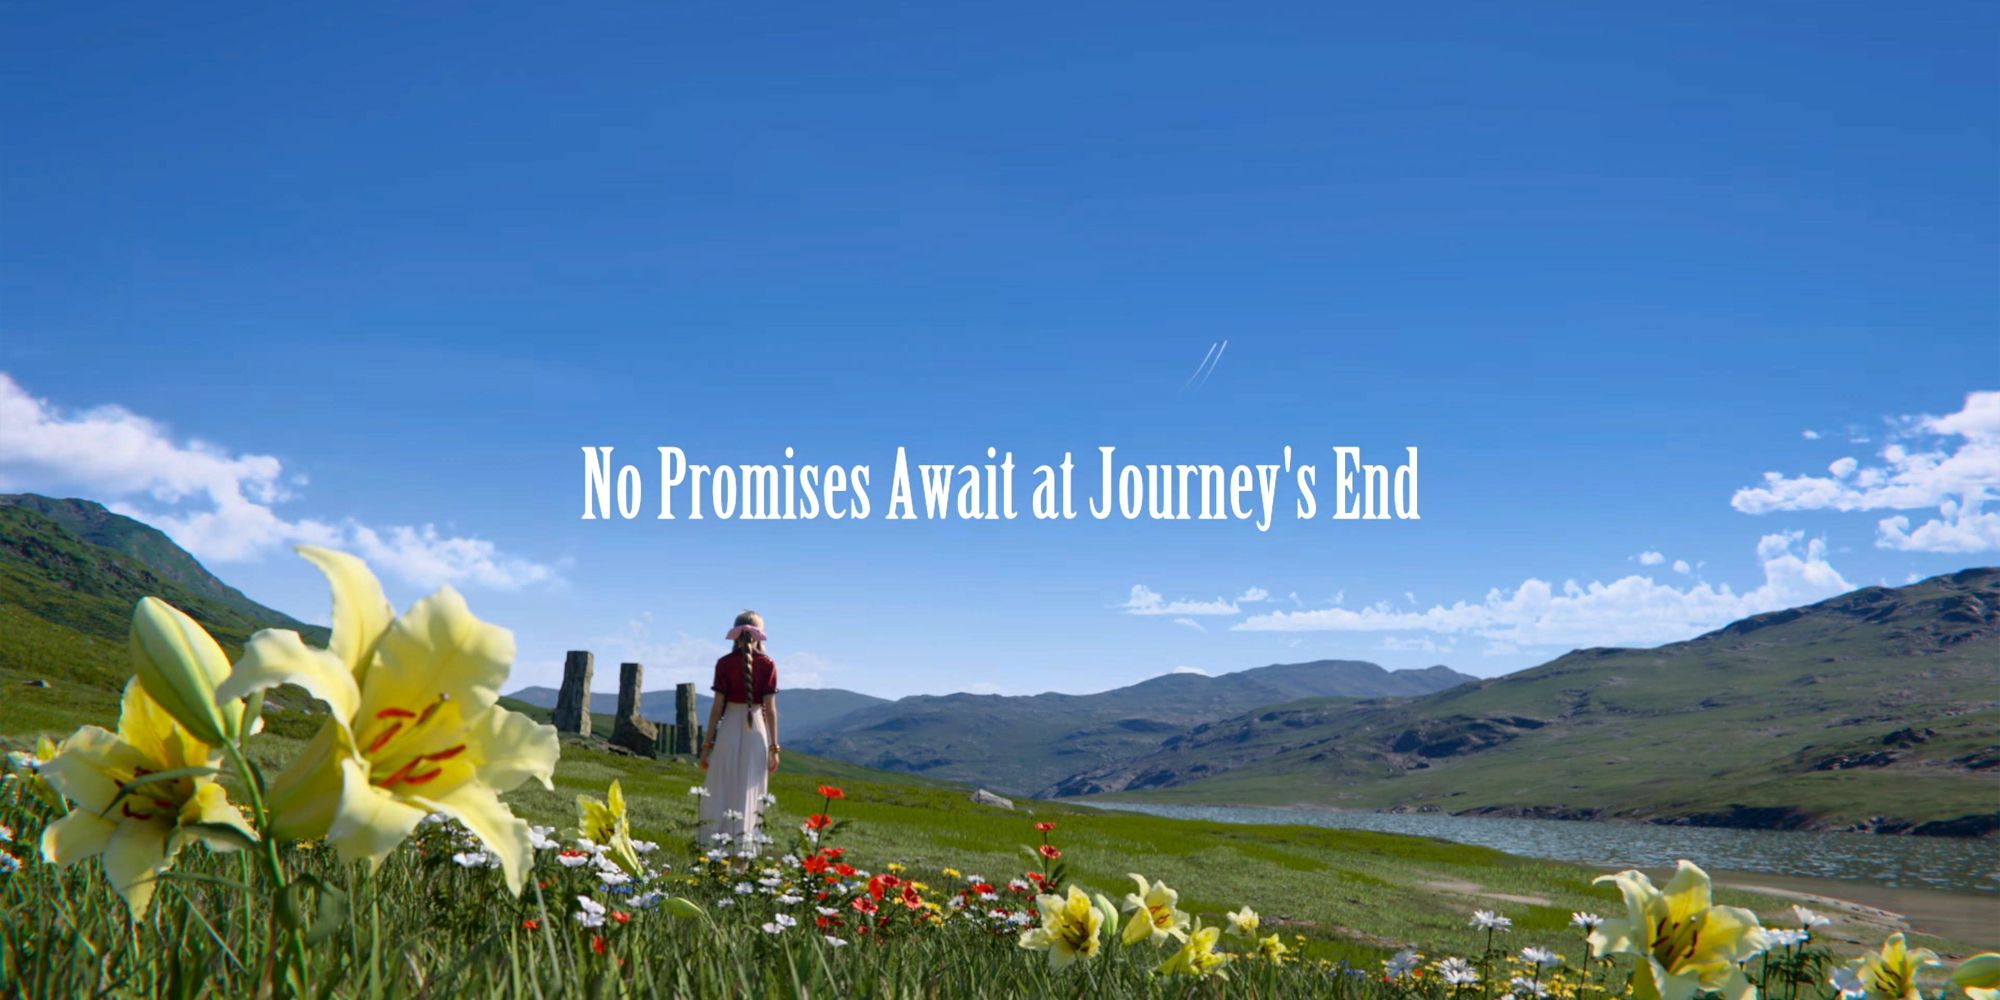 Tela final do FF7 Rebirth mostrando Aerith em um campo olhando para o horizonte com "Nenhuma promessa o aguarda no final da jornada" escrito no centro.